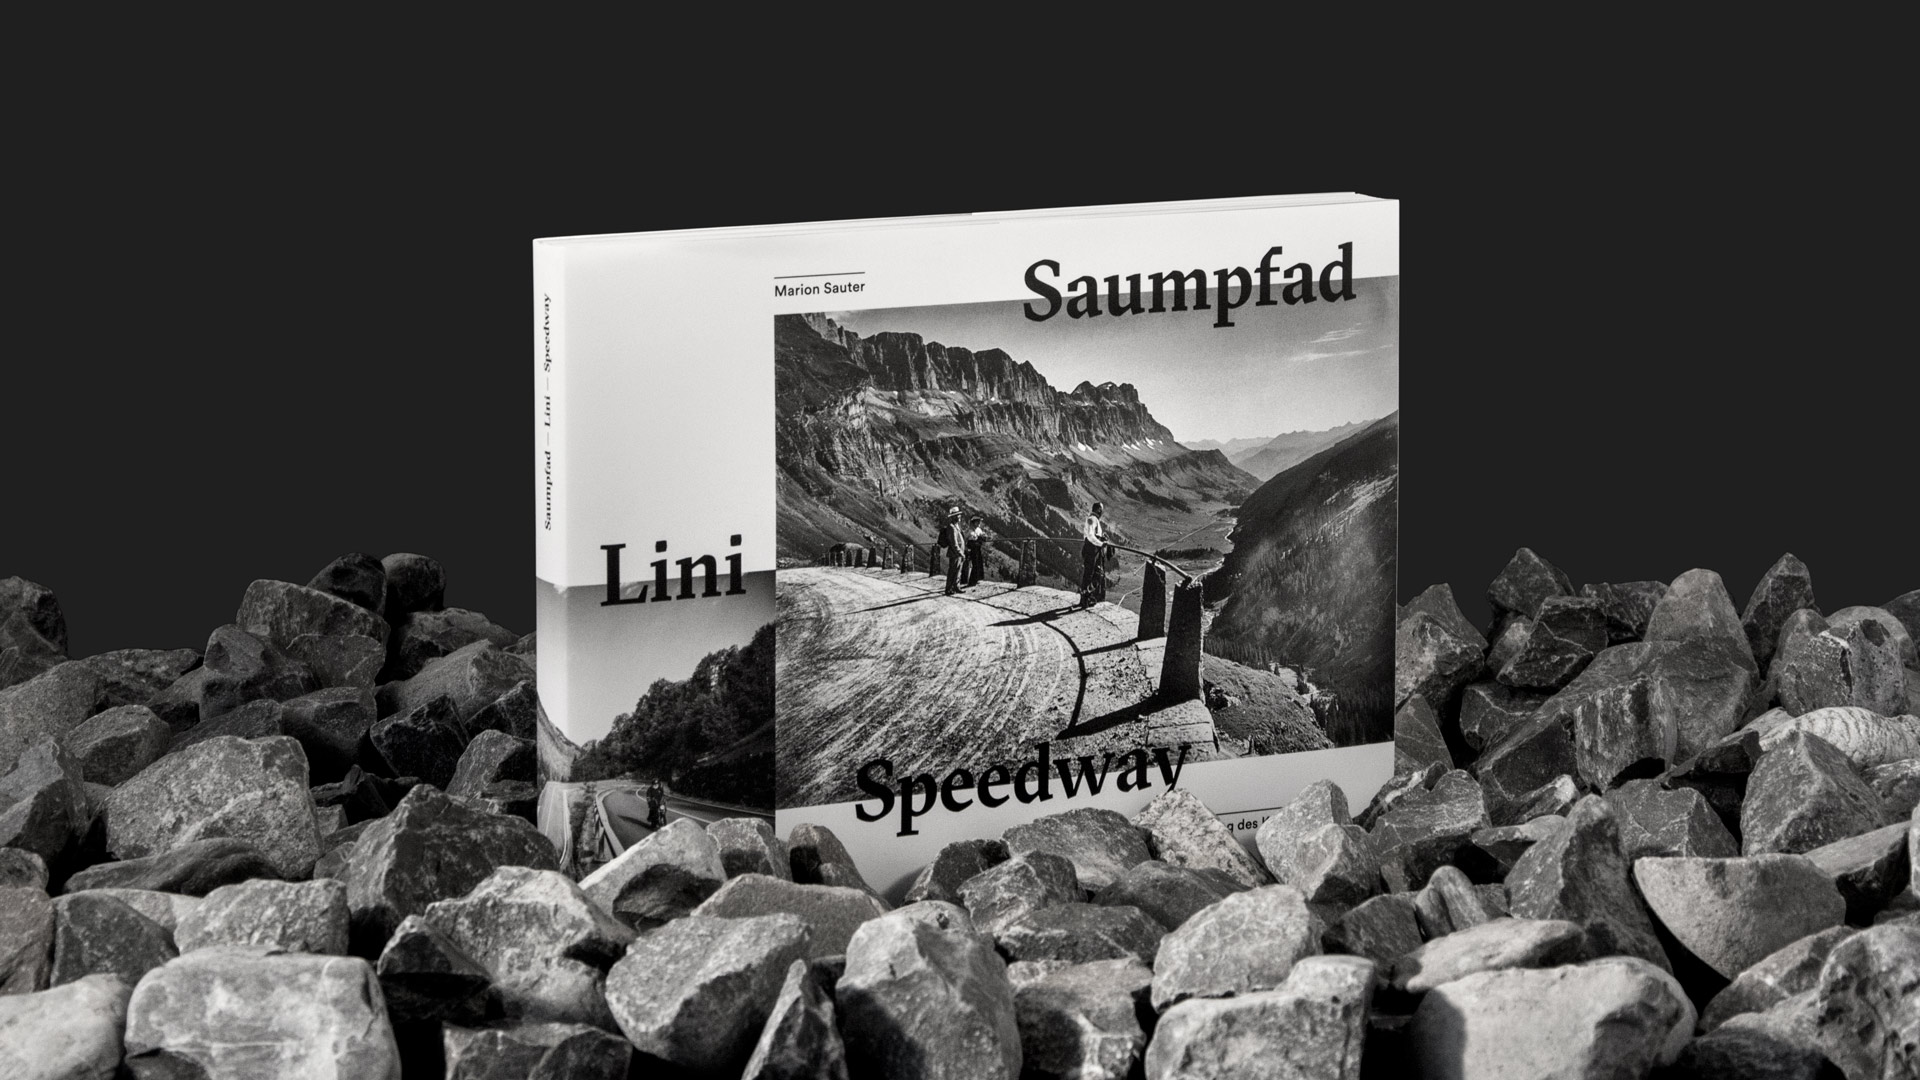 l’équipe [visuelle] – Saumpfad - Lini - Speedway – Buch, Klausenpass, Gestaltung, Grafik, Editorial Design, Agentur, Luzern, Emmenbruecke, Edition Typoundso